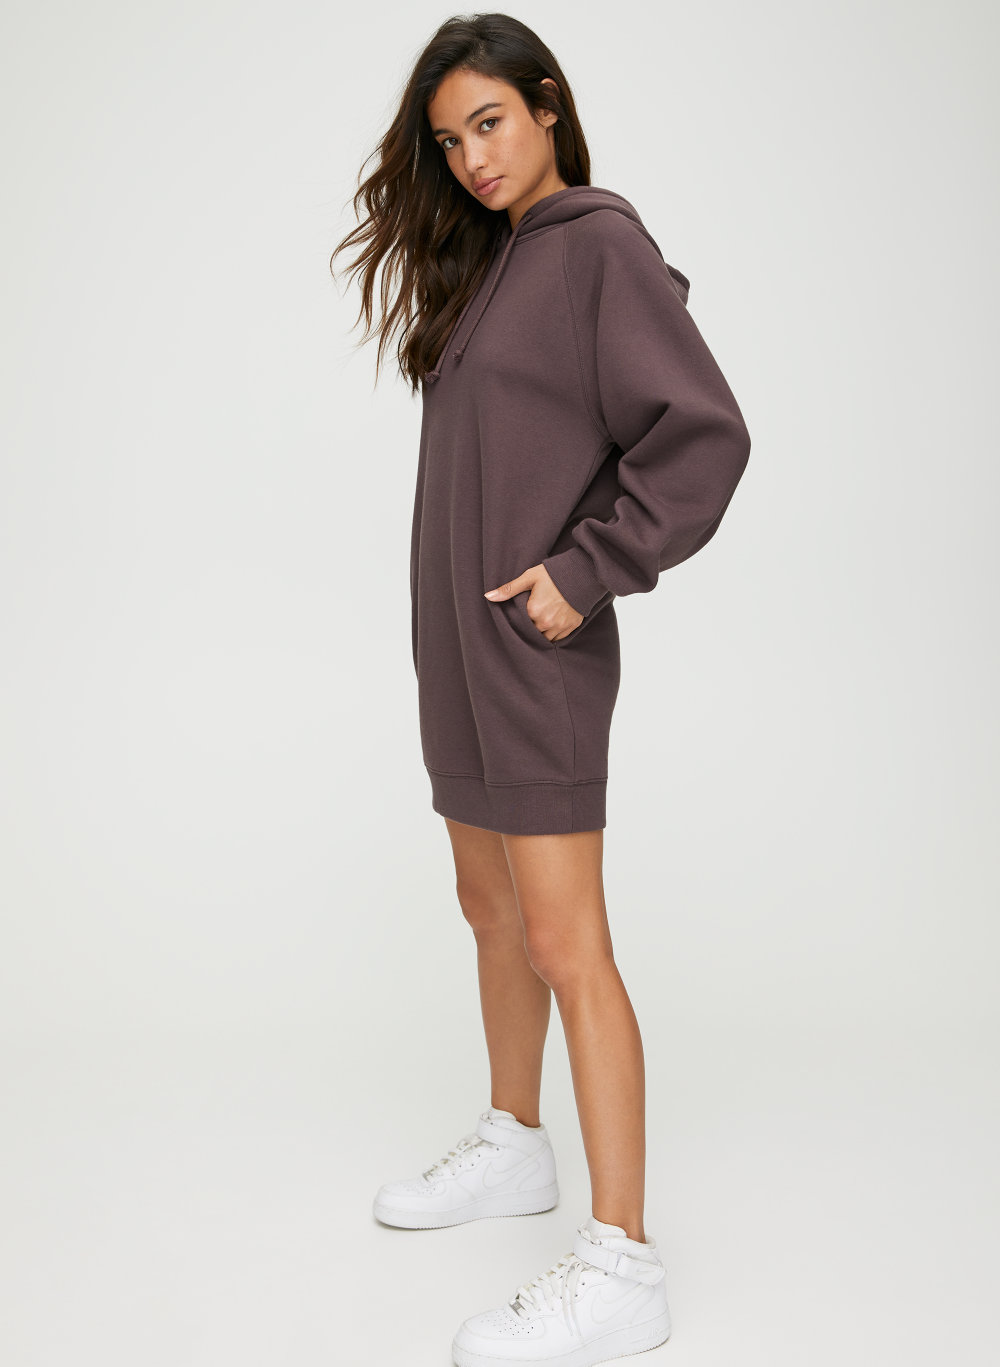 hooded sweatshirt dress canada